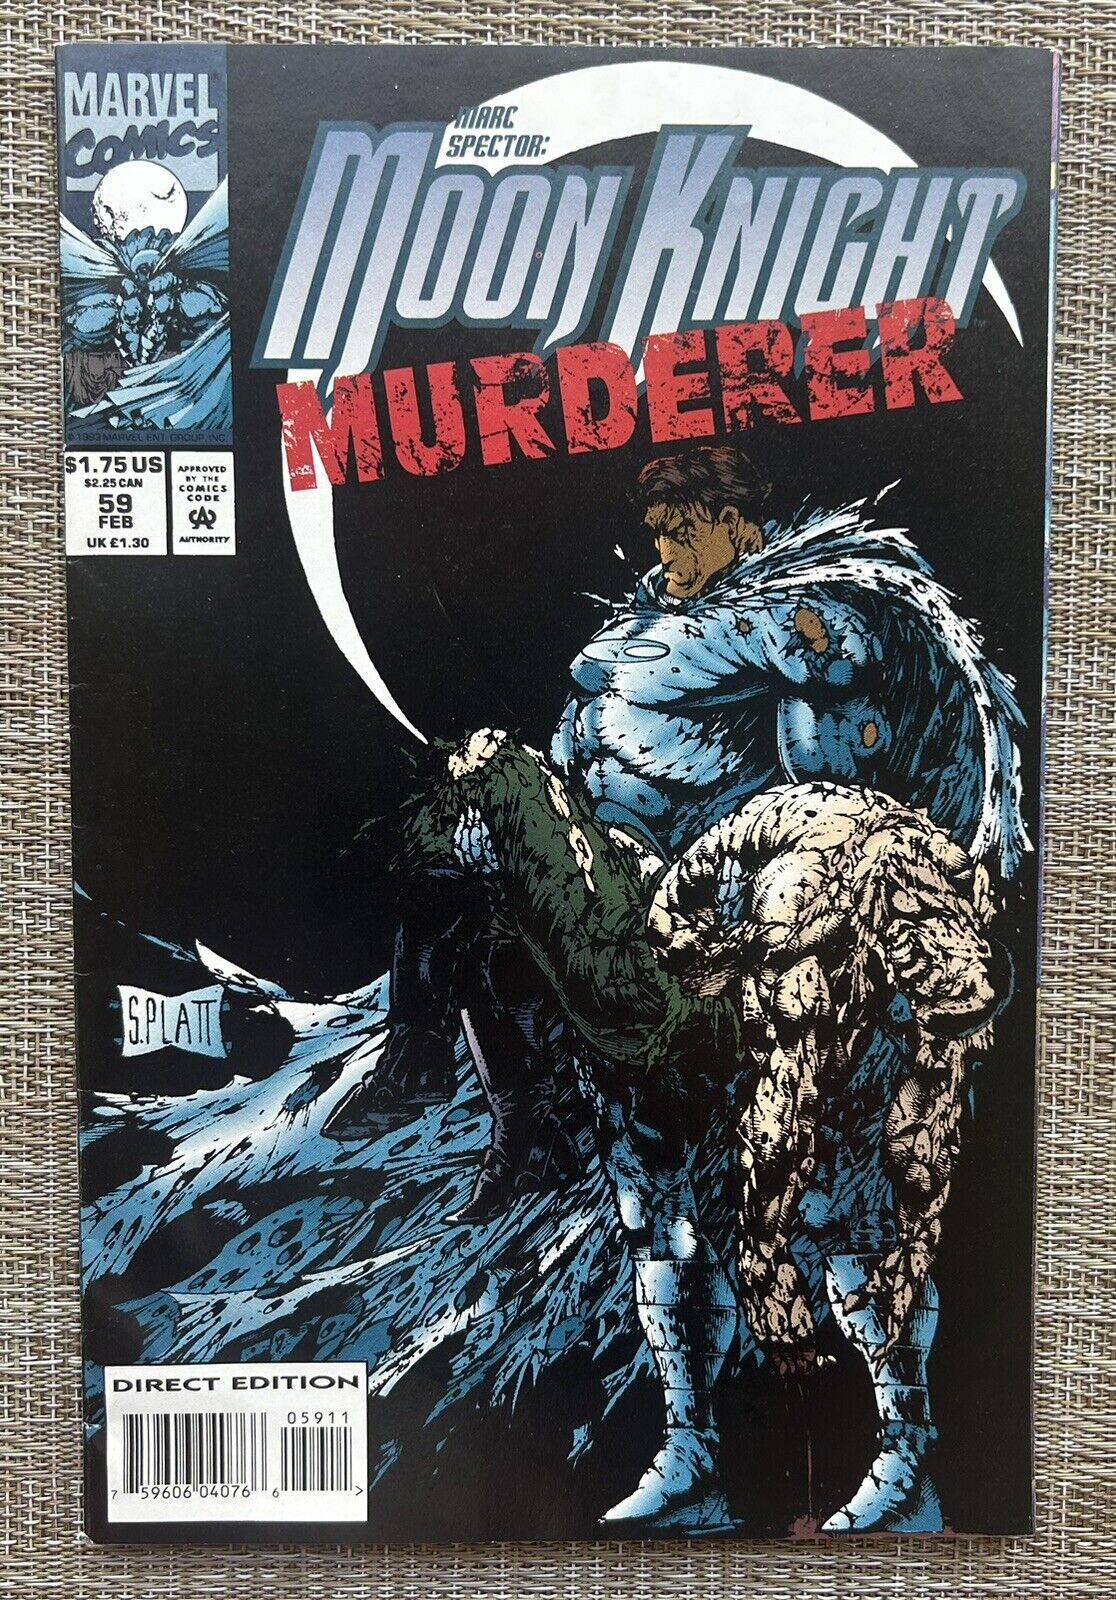 MARC SPECTOR MOON KNIGHT # 59, Stephen Platt Cover, Marvel Comic Book 1994